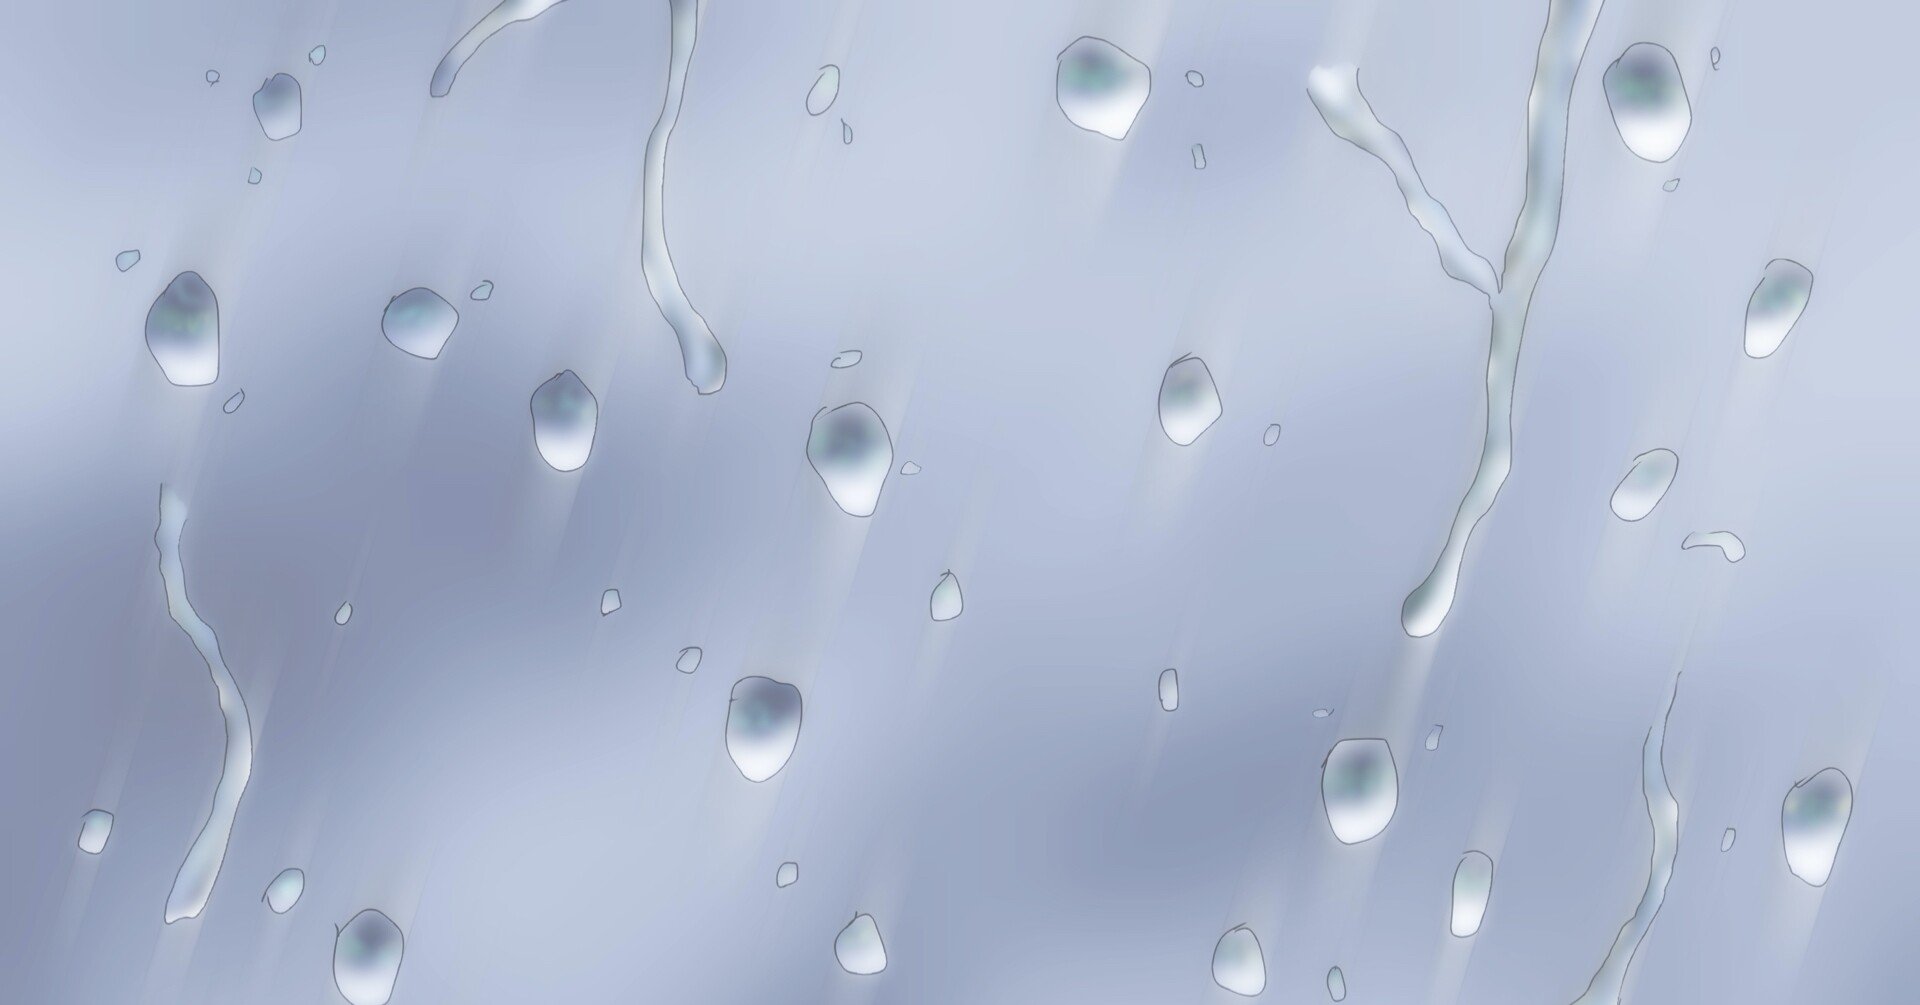 水滴 窓にしたたる雨の描き方 エフェクトの描き方のオススメ本で実践 峰村 佳 Note